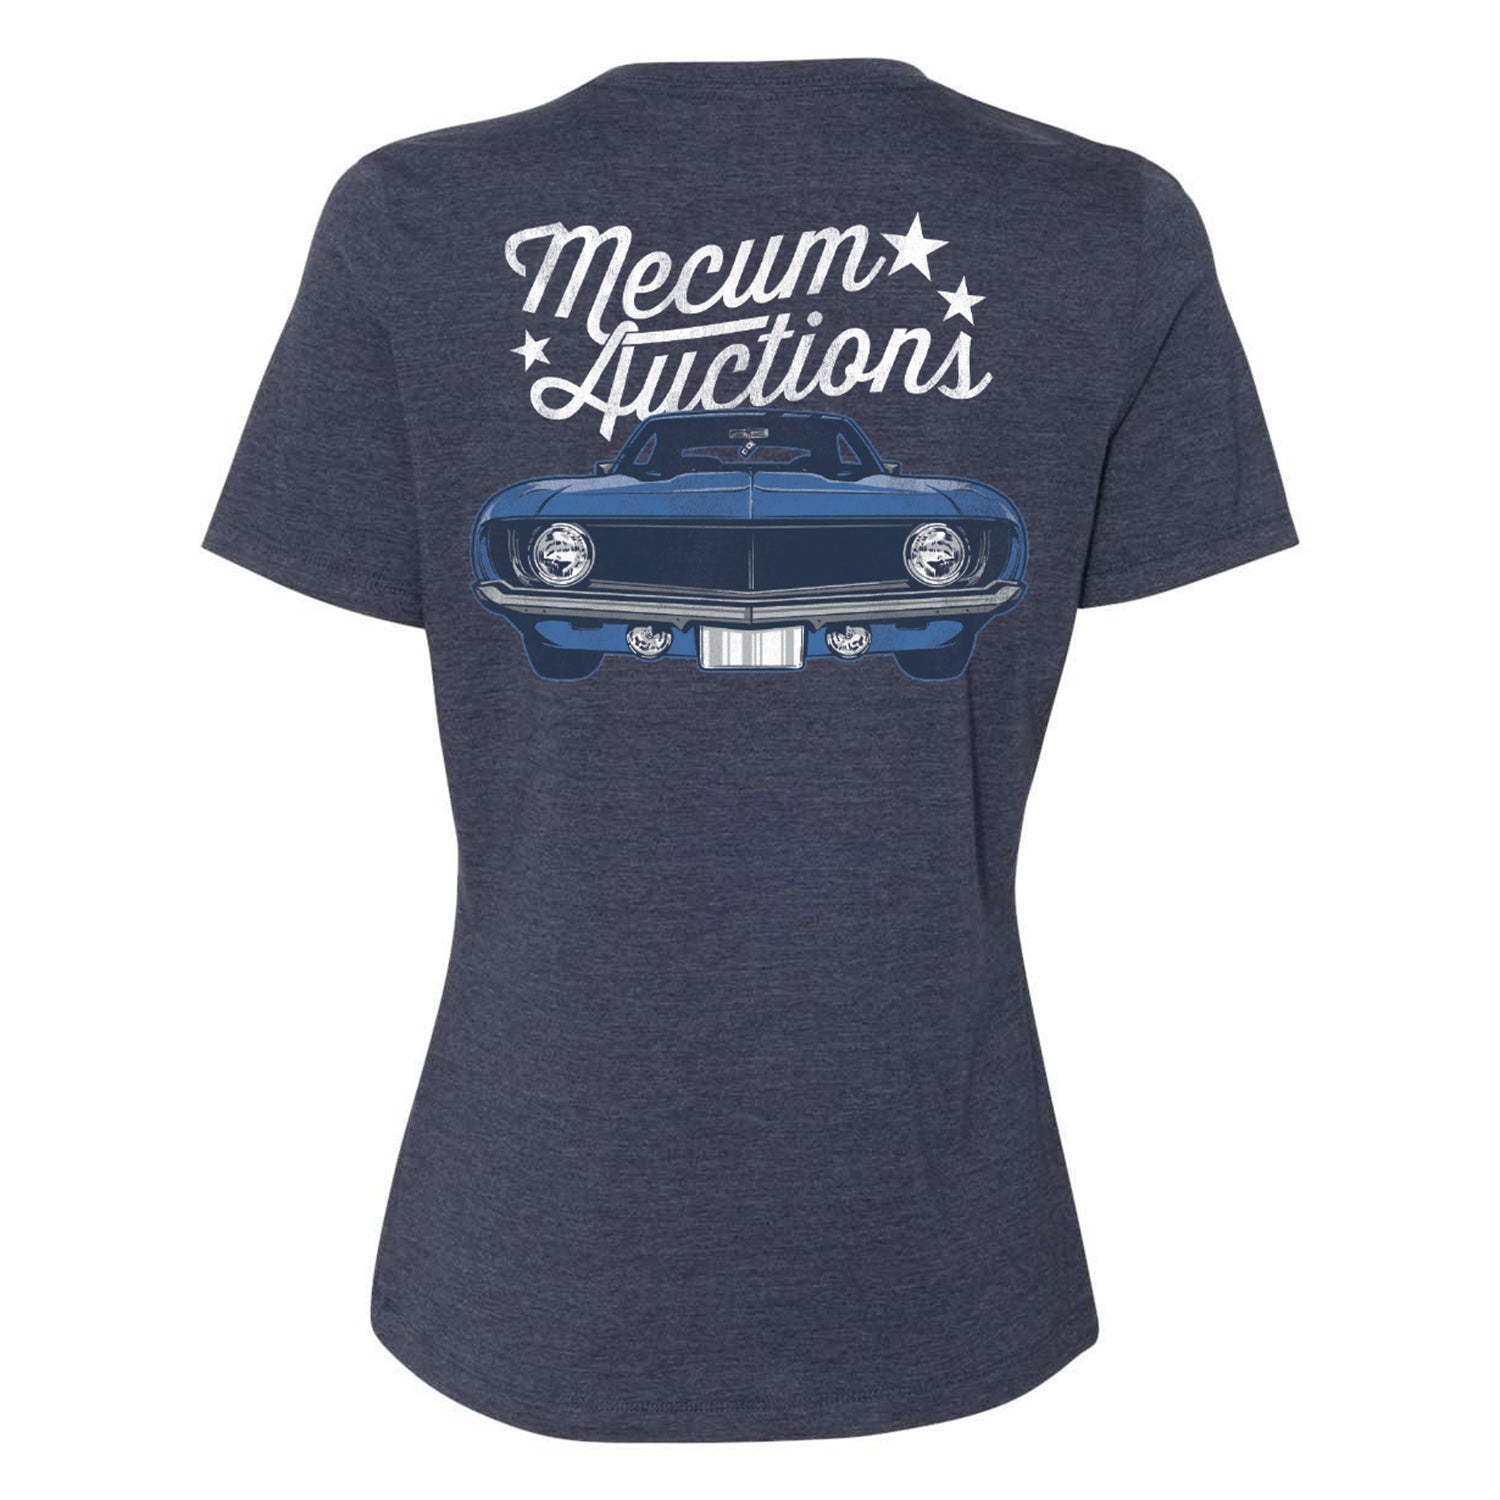 Mecum Auctions Ladies Heather Navy Vintage Car T-Shirt - Back View